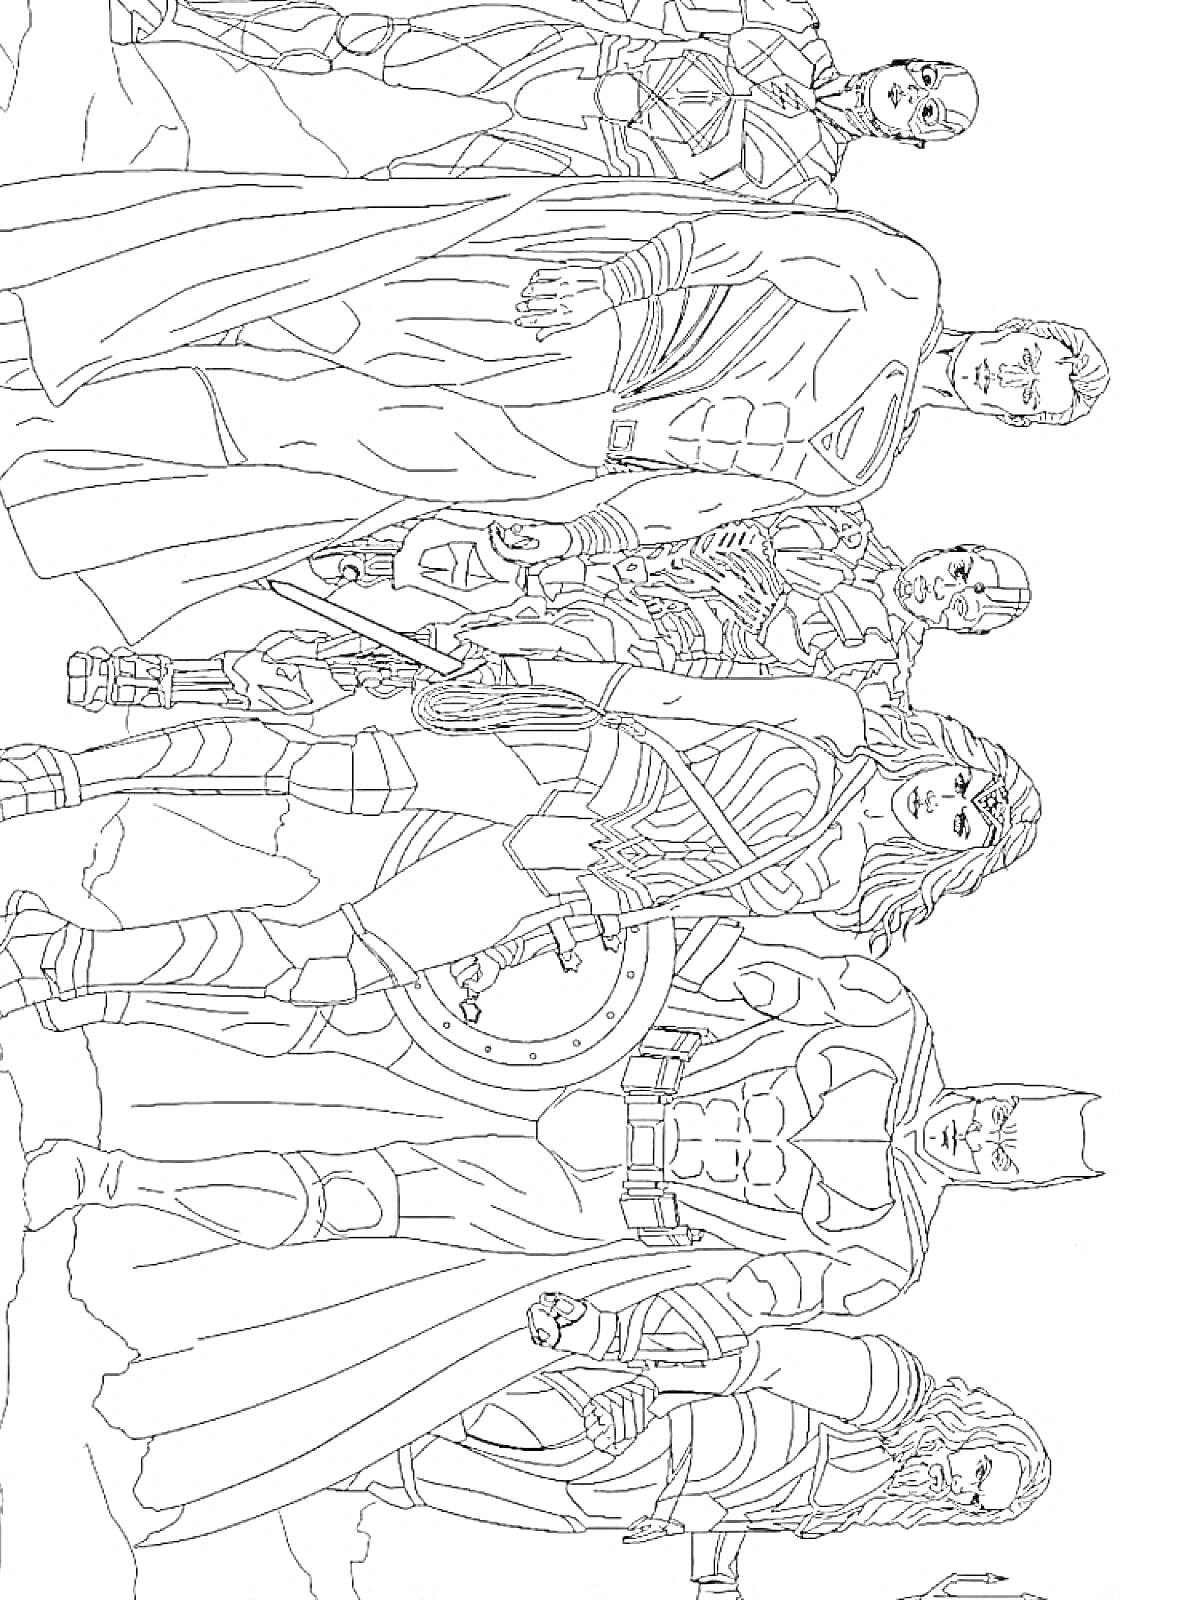 Лига Справедливости - команда героев в полном составе (Супермен, Бэтмен, Чудо-женщина, Аквамен, Флэш, Киборг)